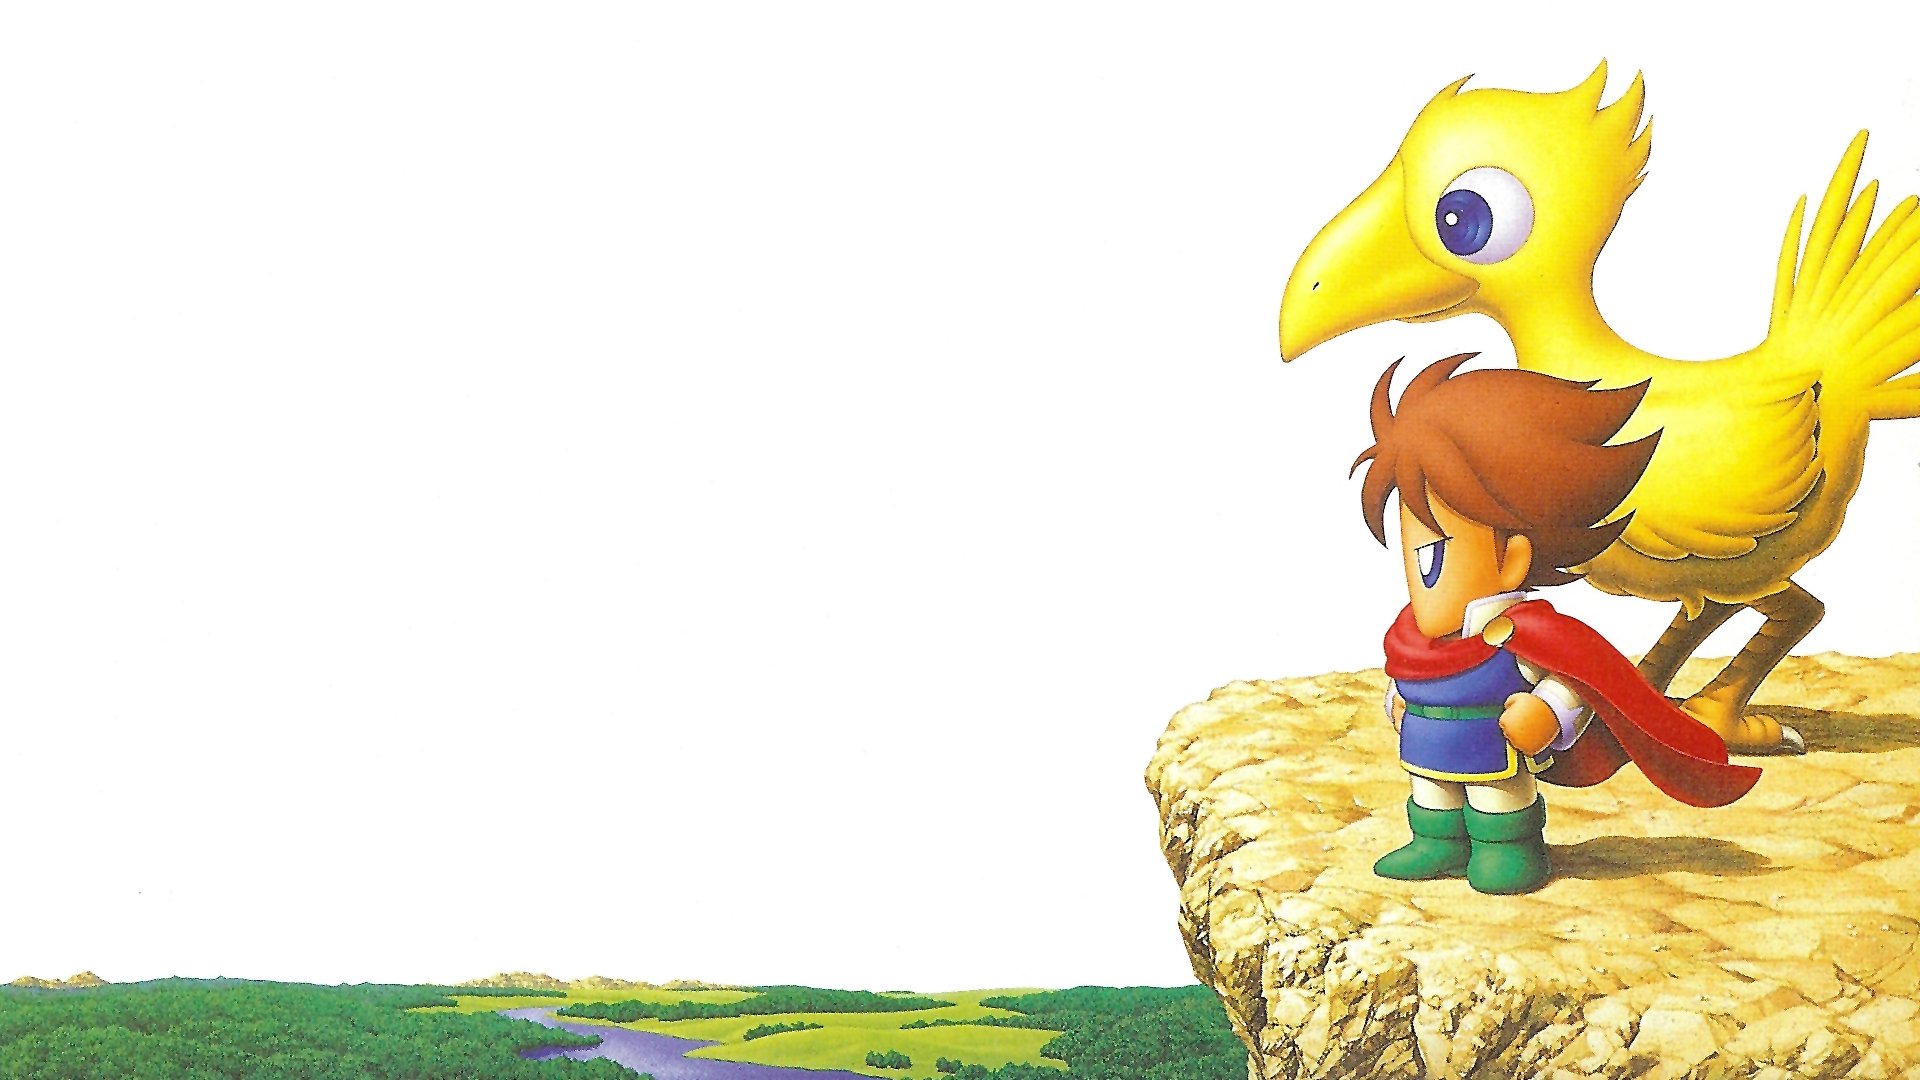  Final Fantasy  V  HD Wallpaper  Background Image 